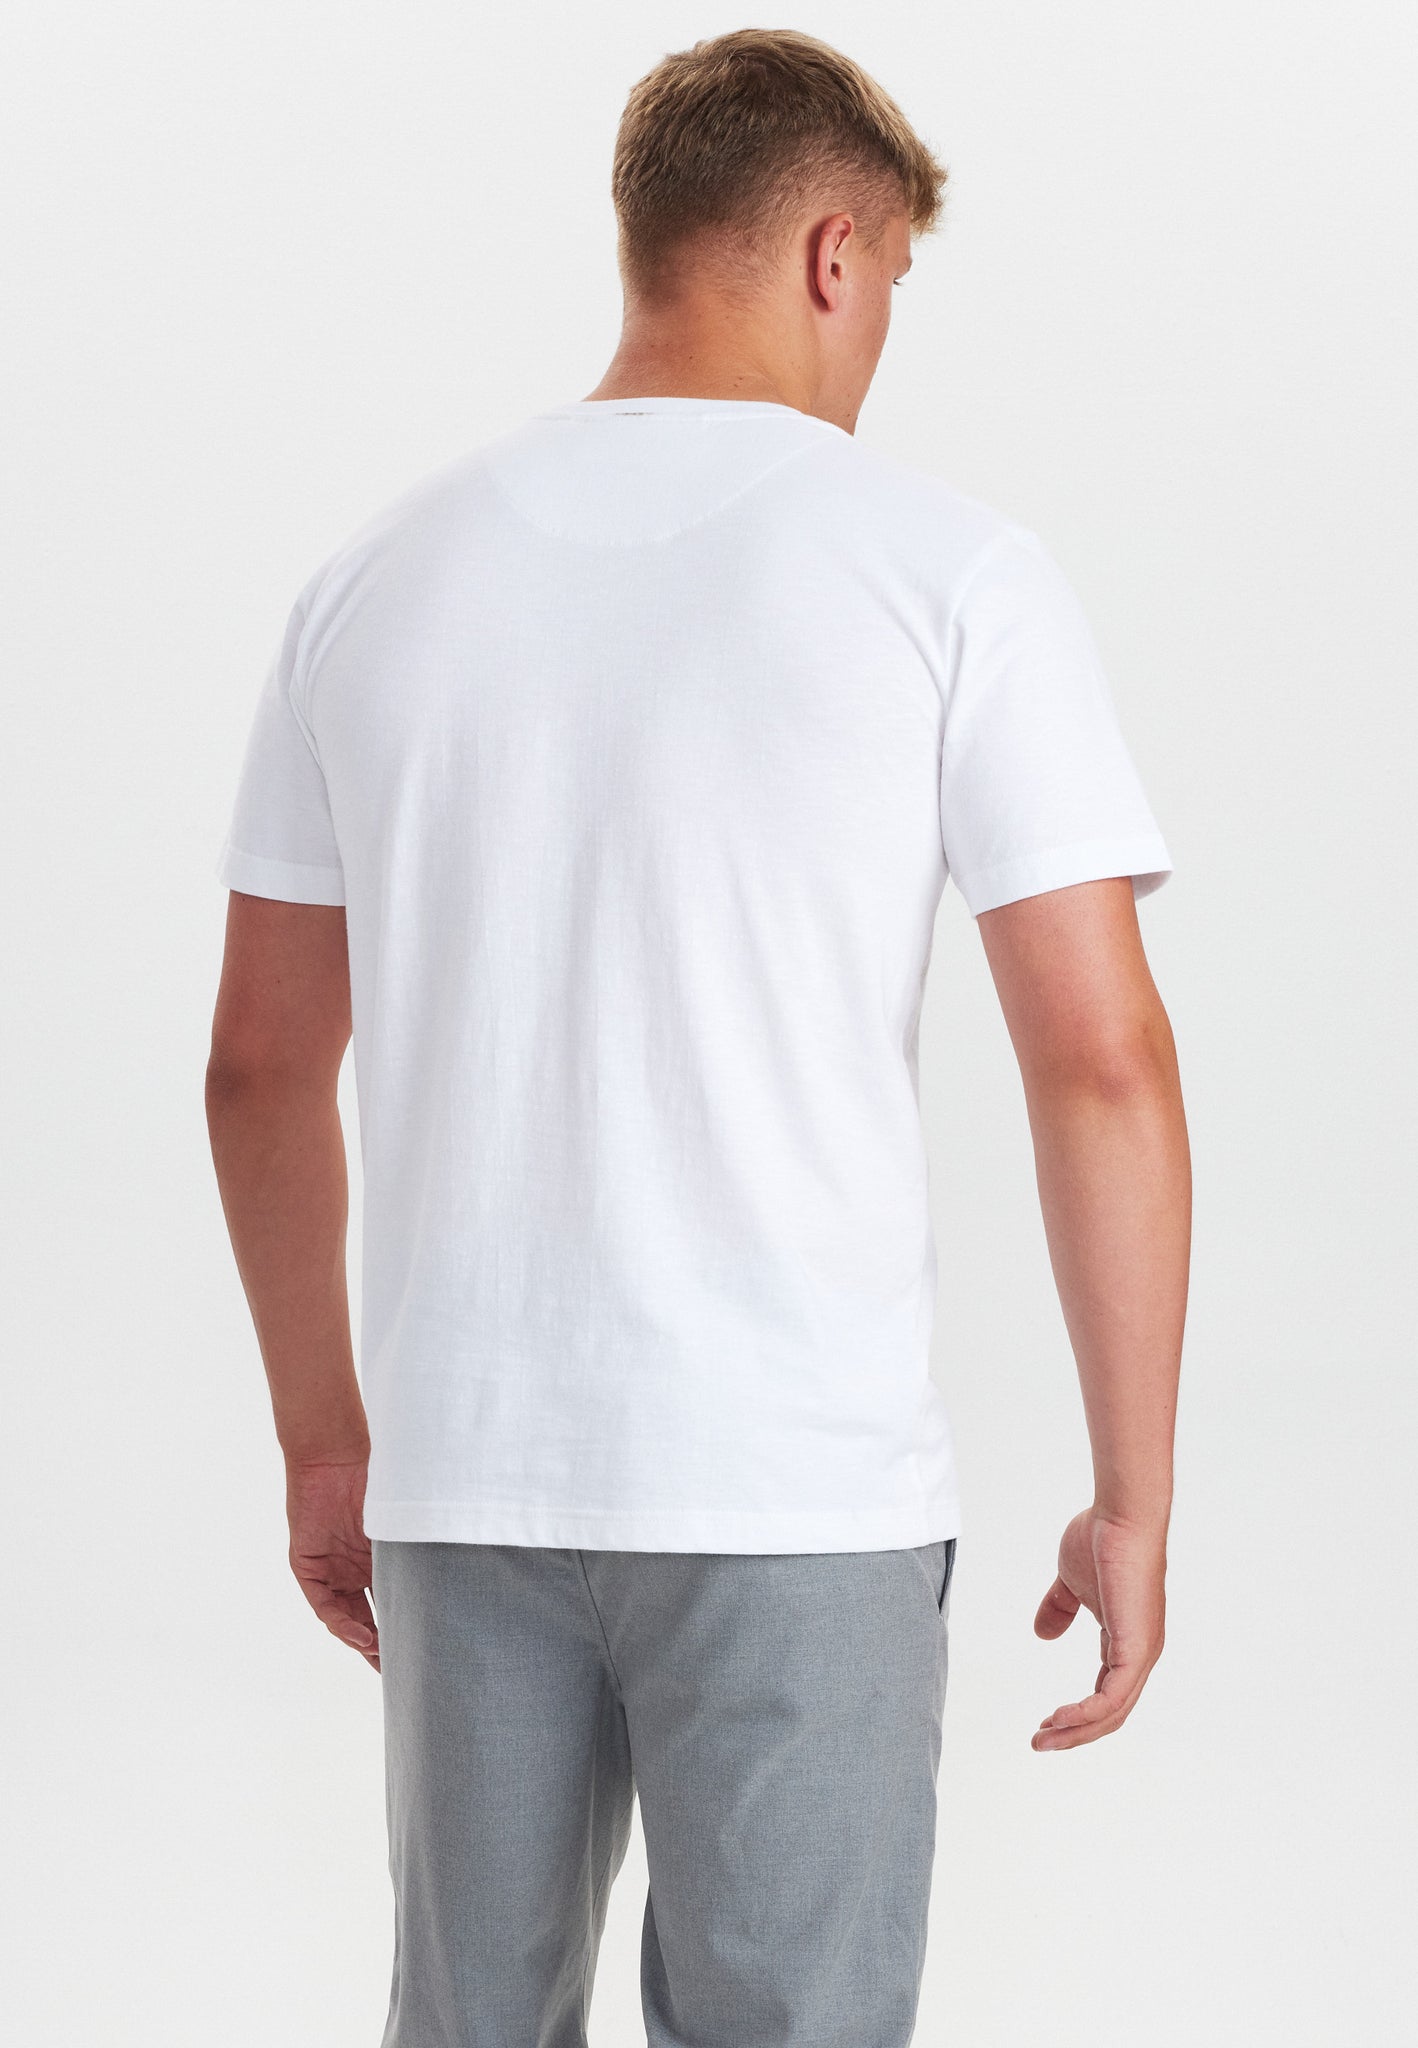 DXNMXRK. DX-Casper T-shirt White